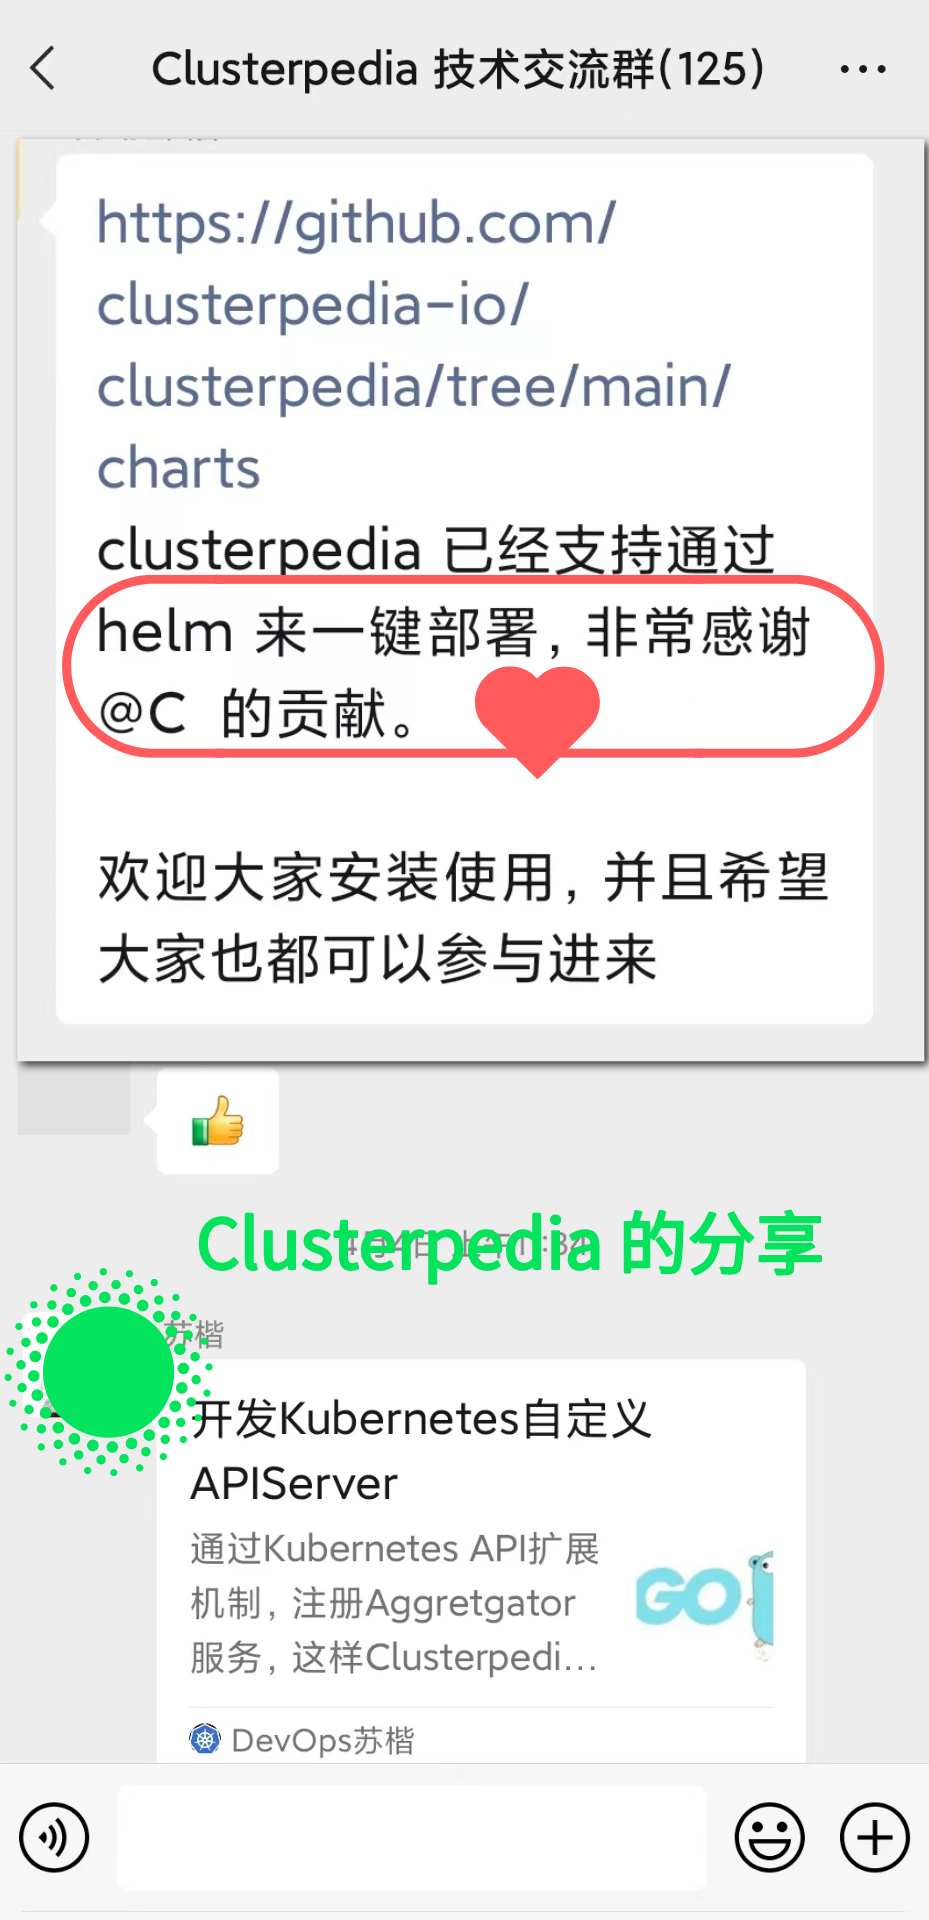 多集群复杂检索工具 - Clusterpedia 入选云原生全景图